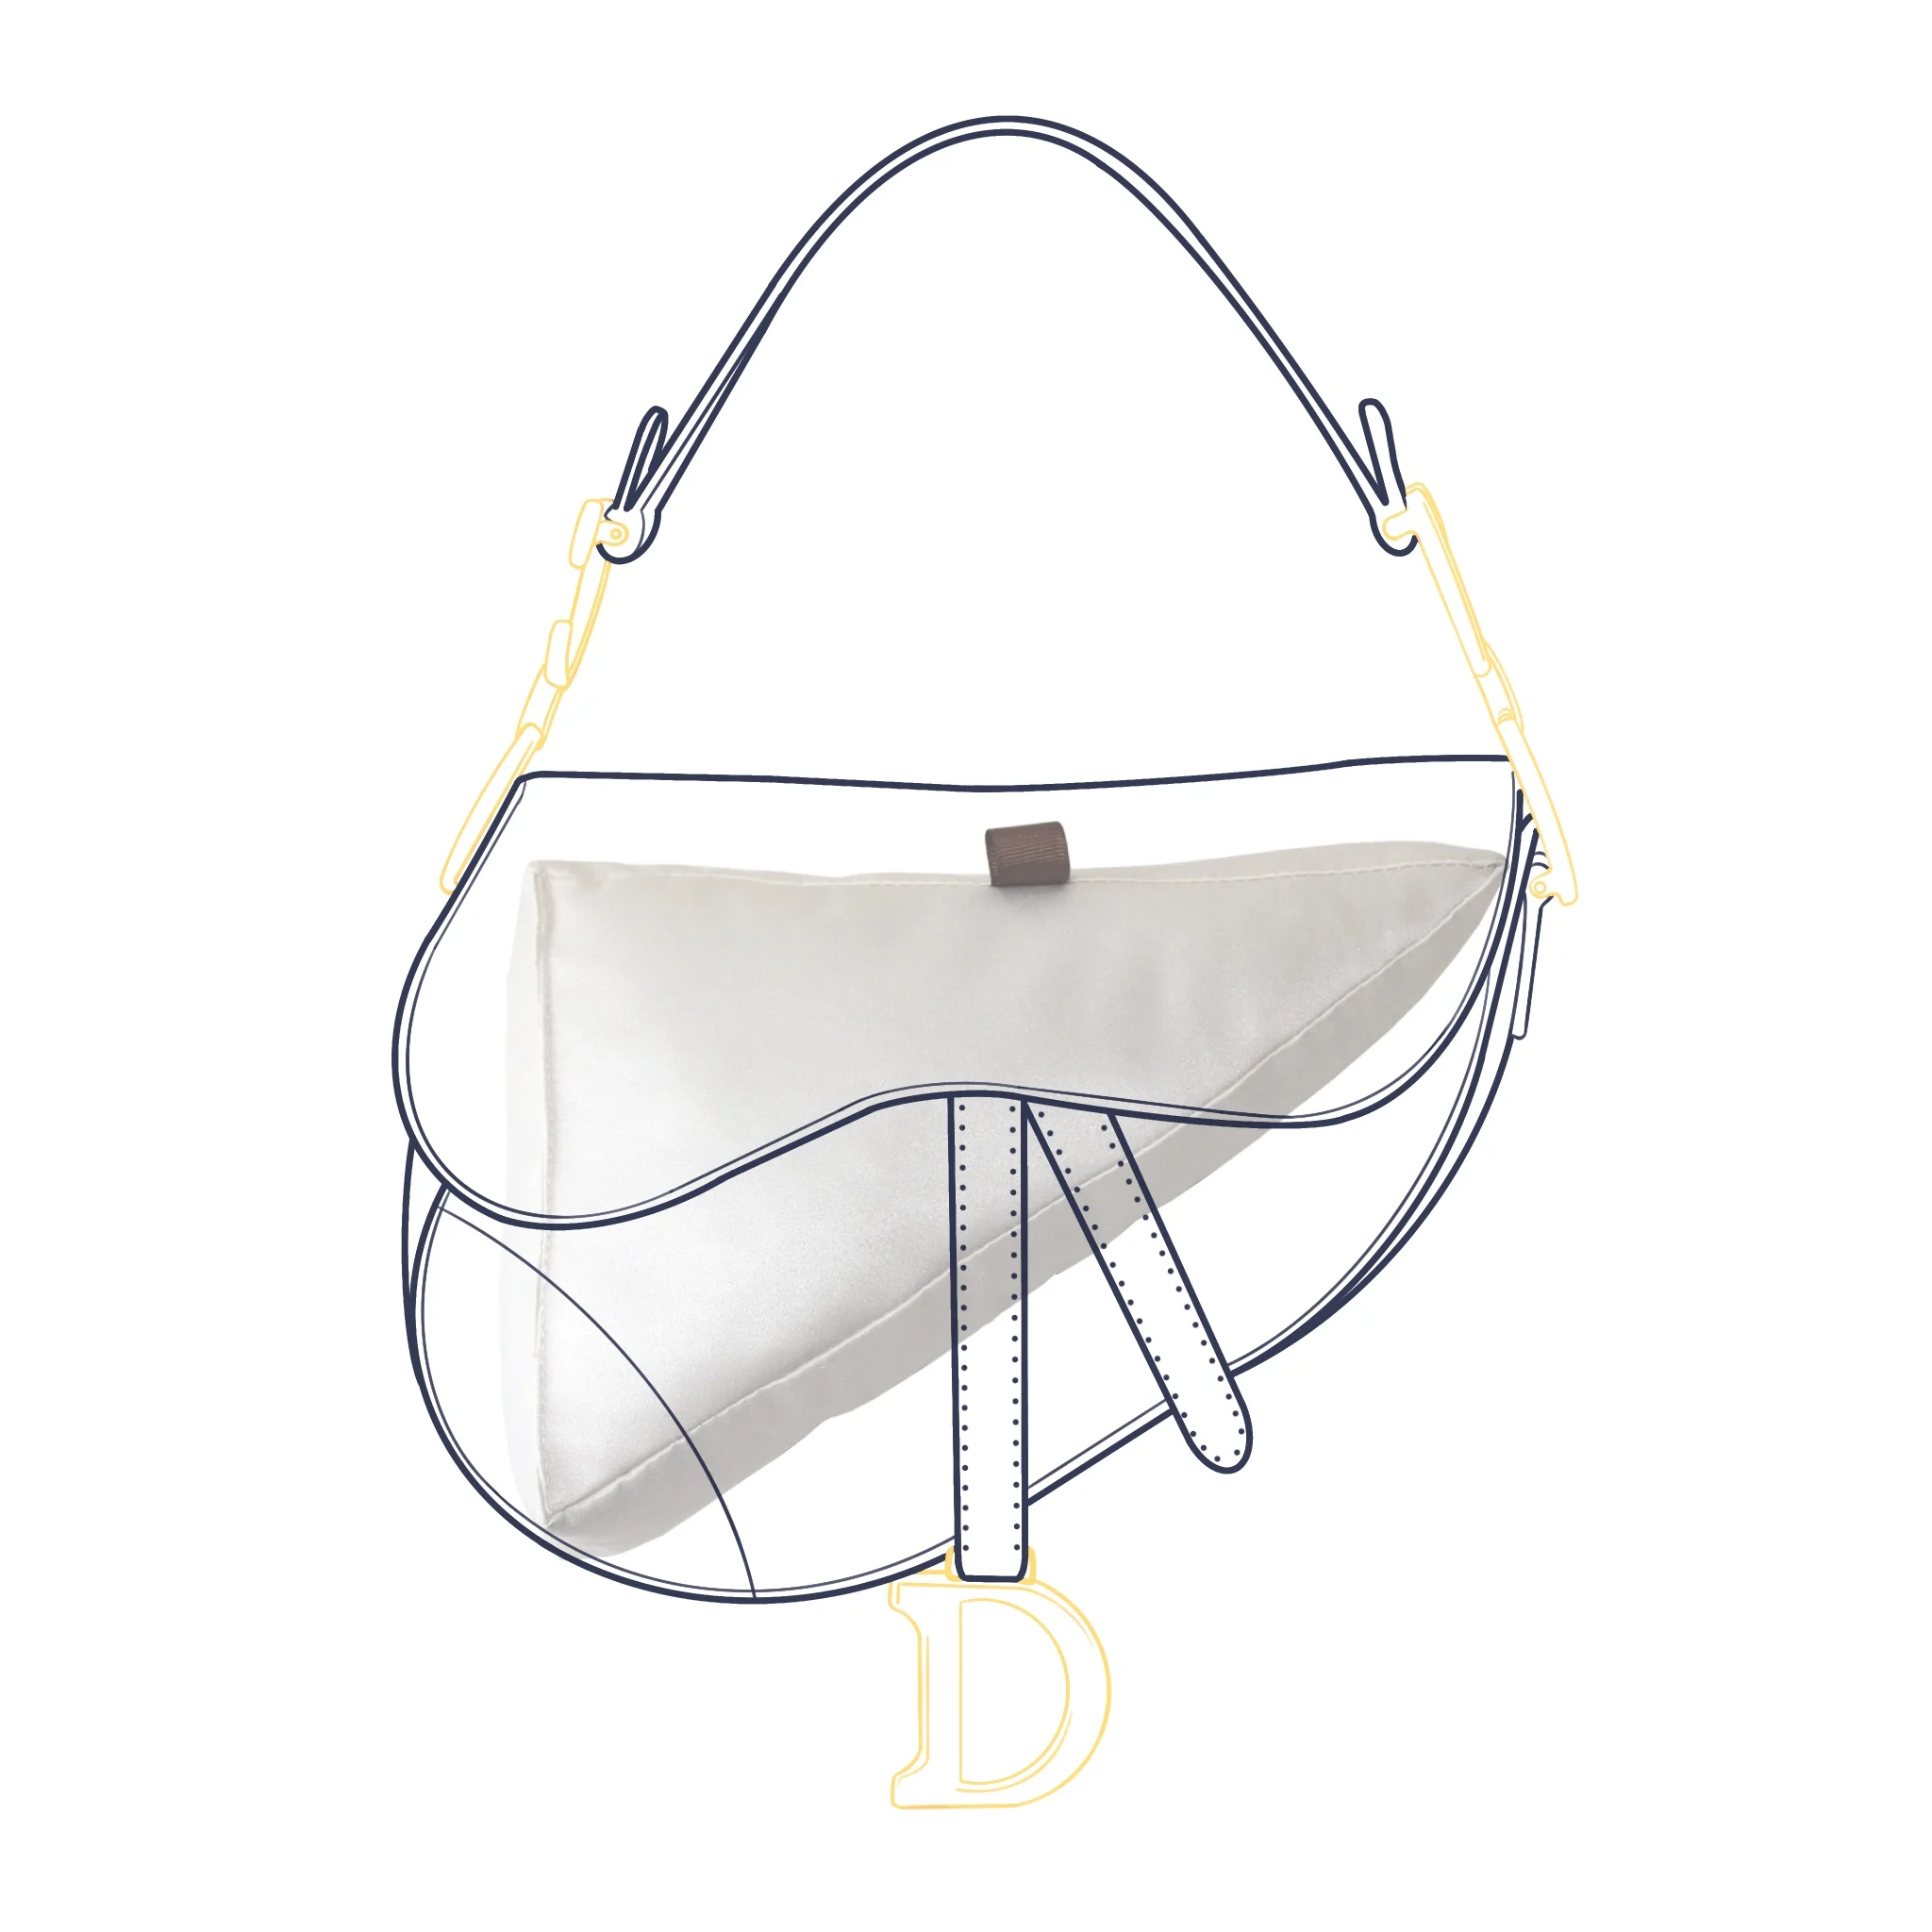 Fit For Saddle Bag Luxury Handbag Insert Bag Shaper Pillow Shape Cushion For Dior Saddle Bag